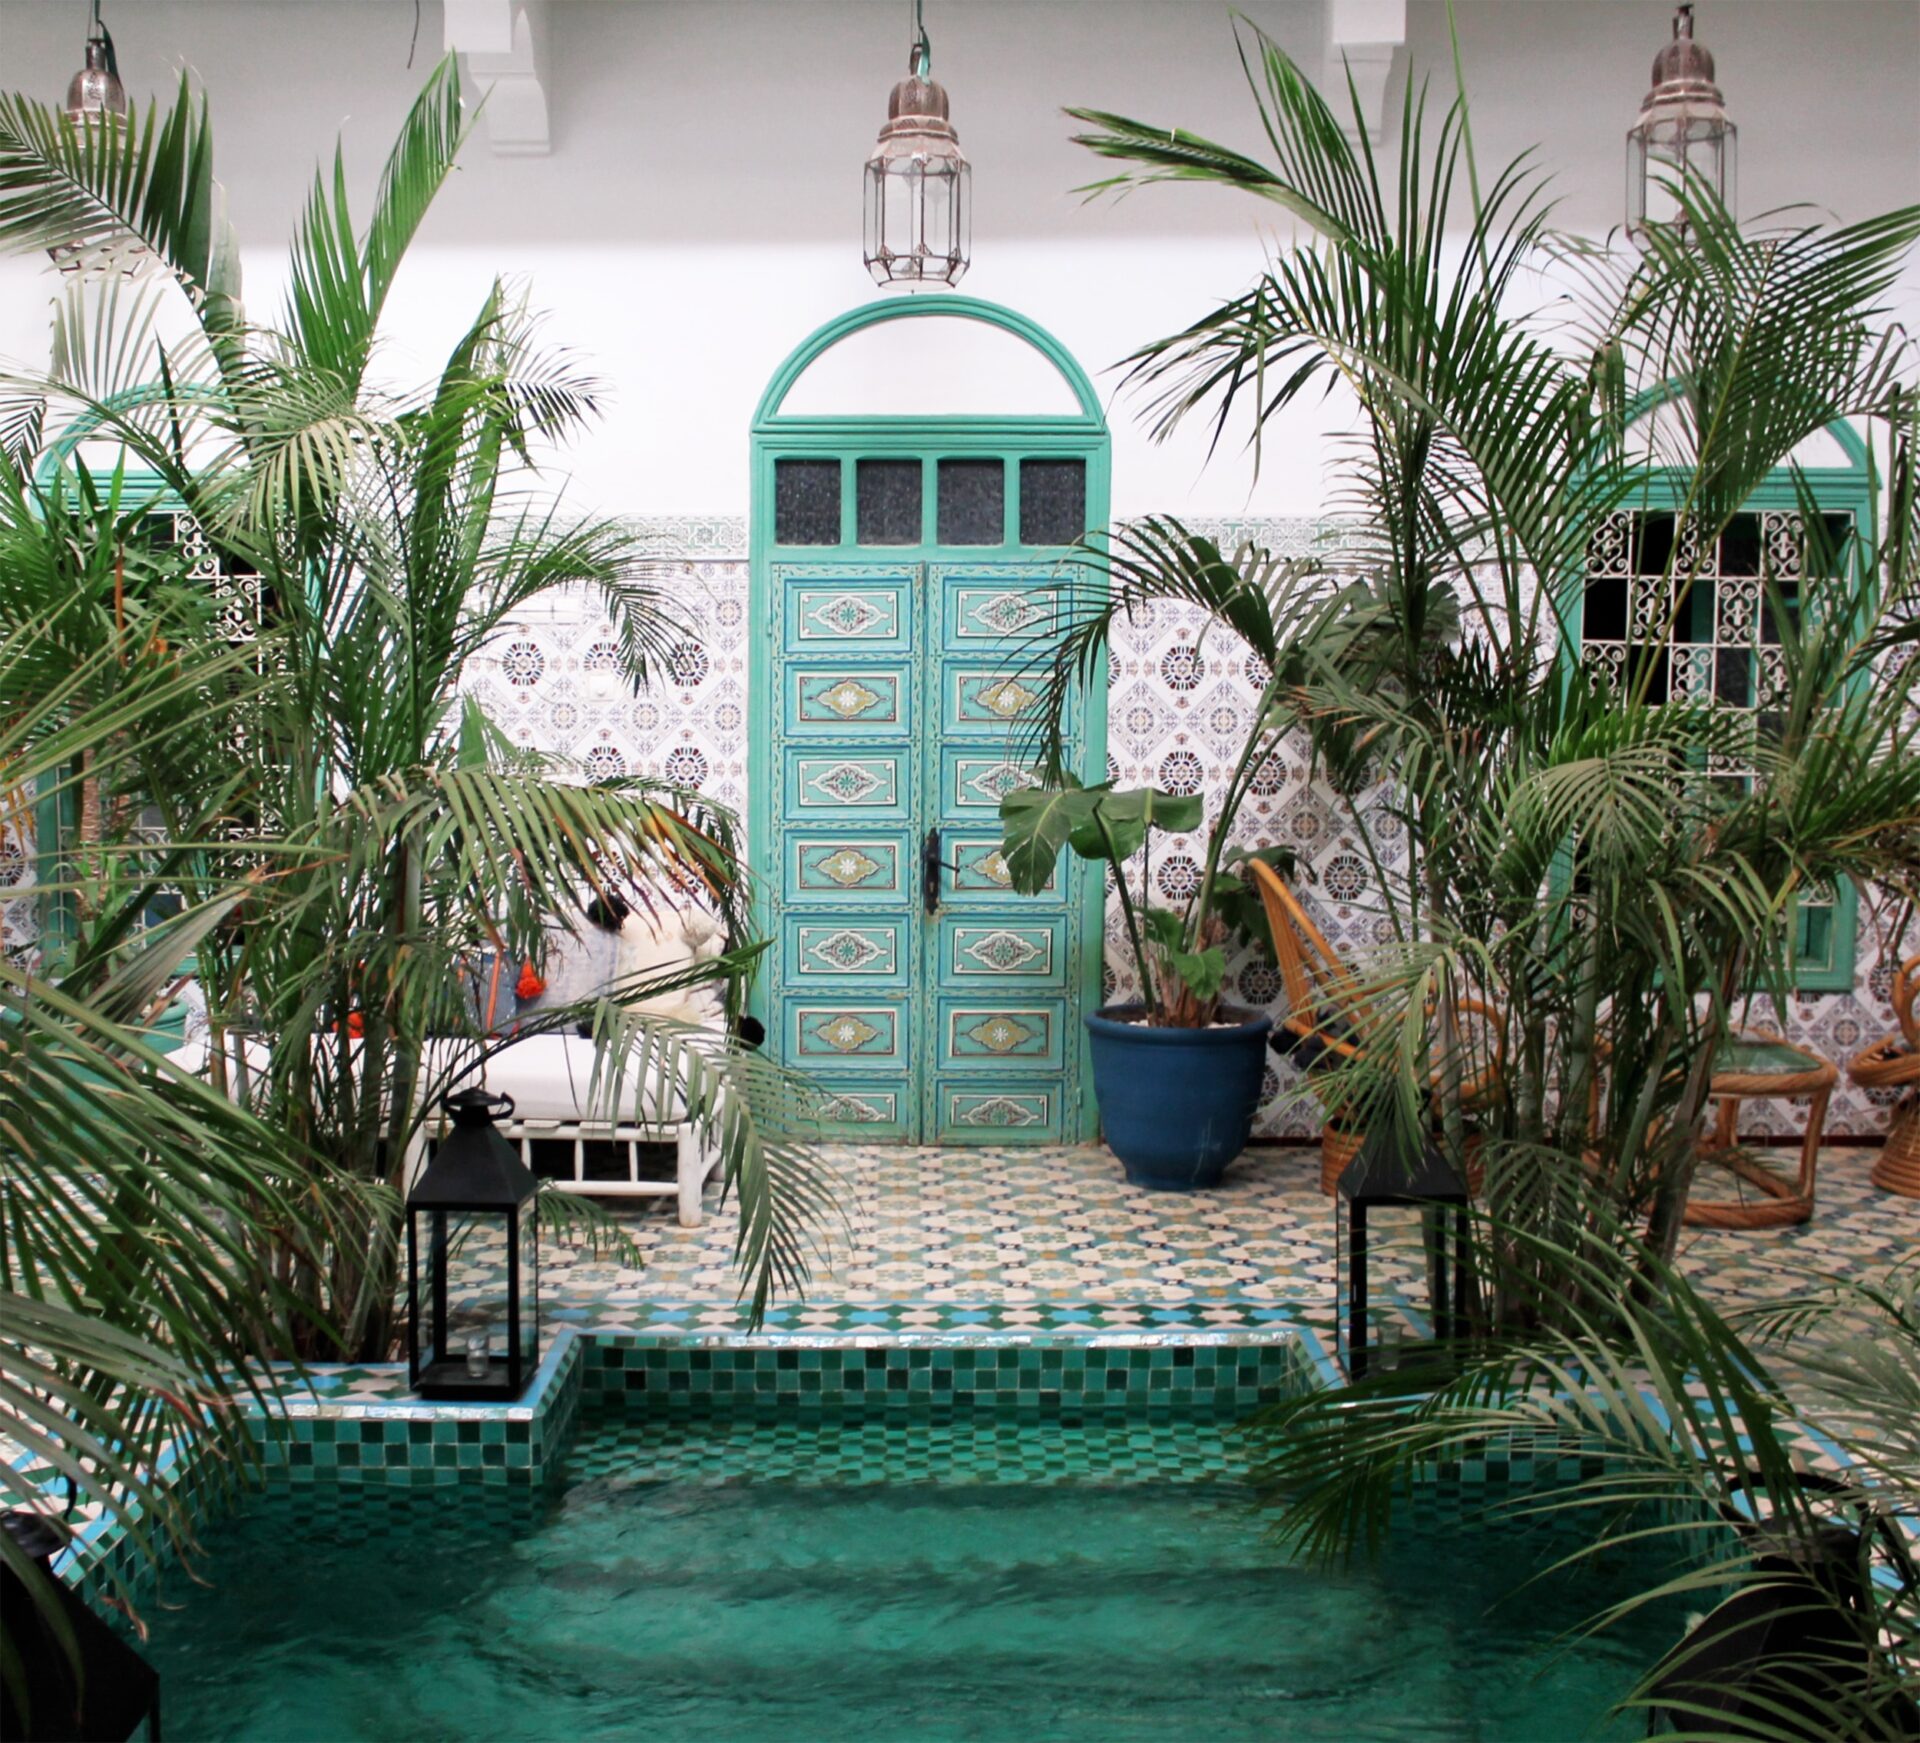 Terrasse-marocaine-inspirée-de-Riad-marocain-Real-Dream-House